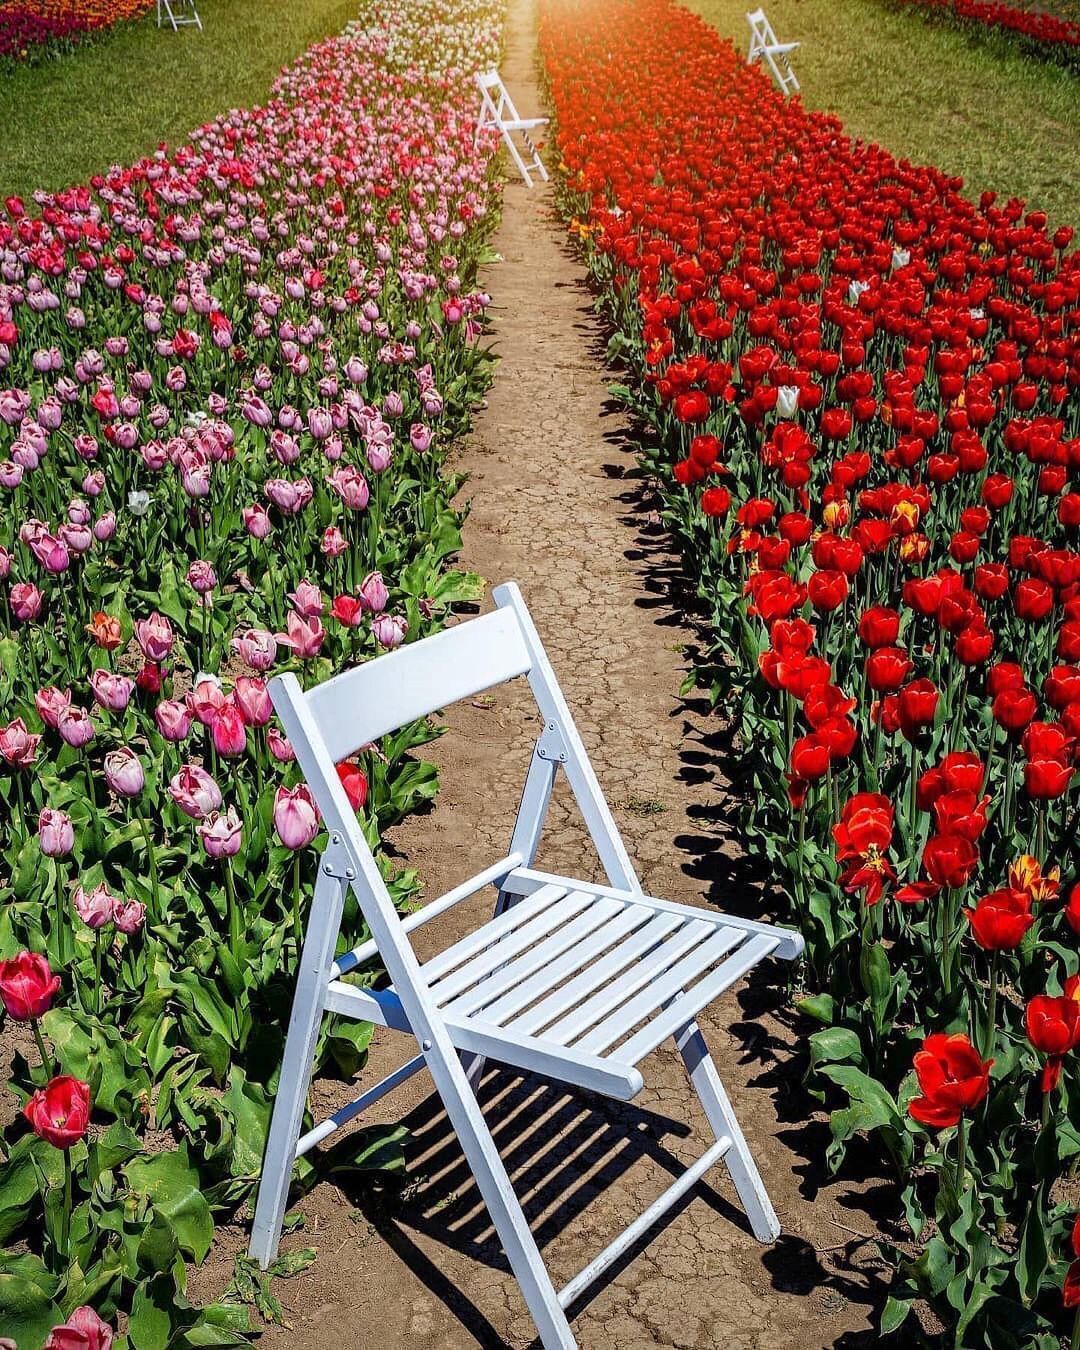 "Українська Голландія": топ парків, де можна помилуватися цвітінням квітів